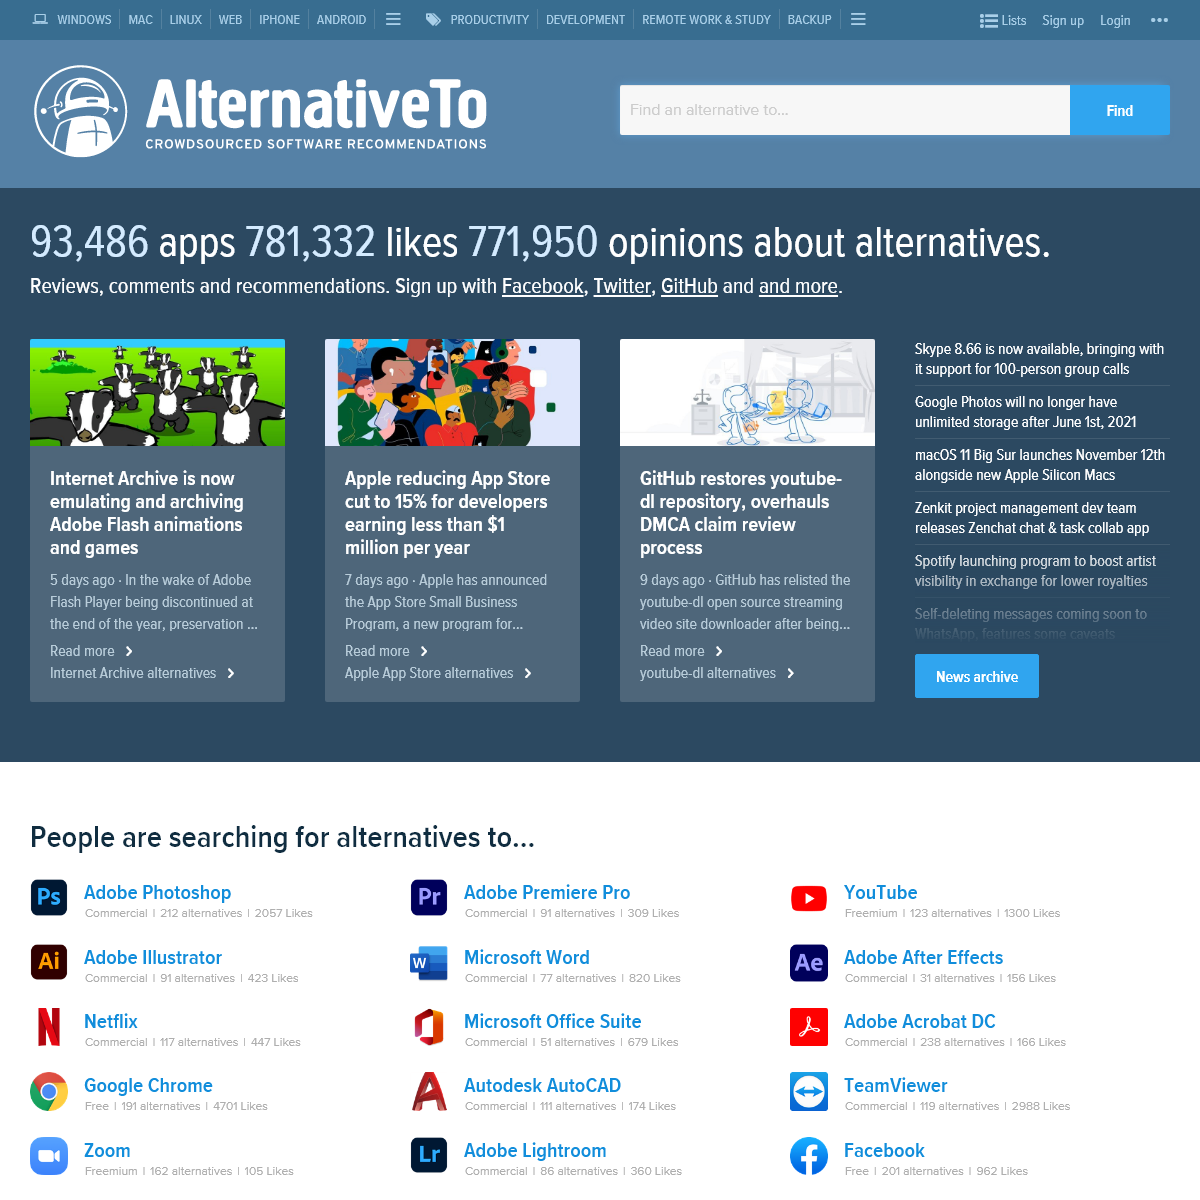 A complete backup of alternativeto.net